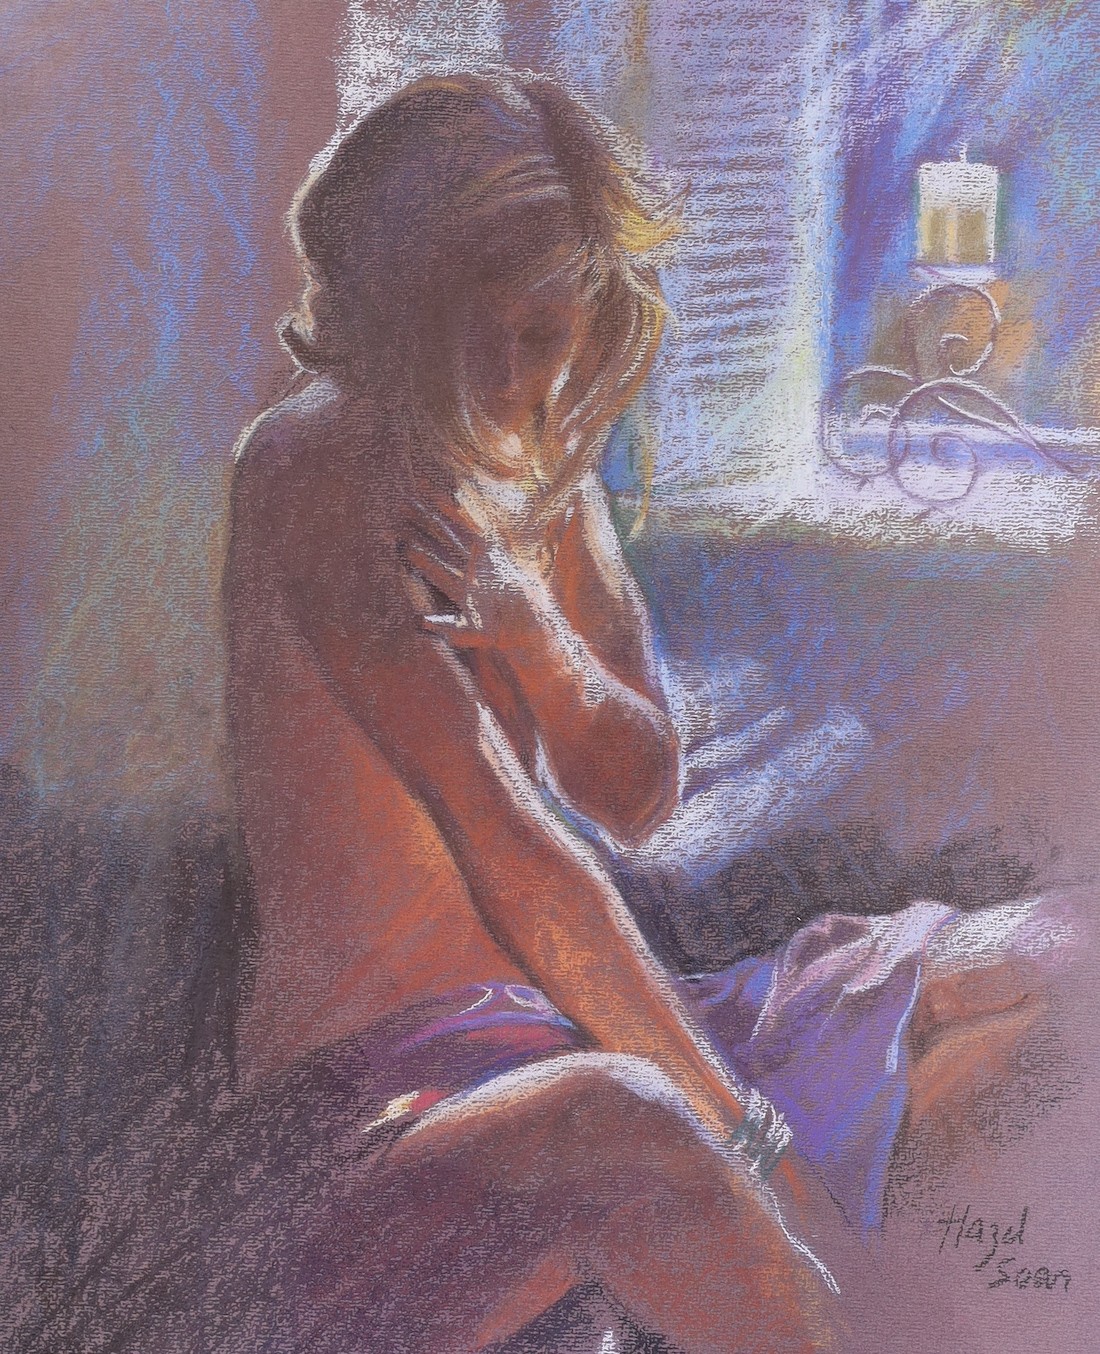 Hazel Soan, pair of pastels, Nude studies, 50 x 40cm